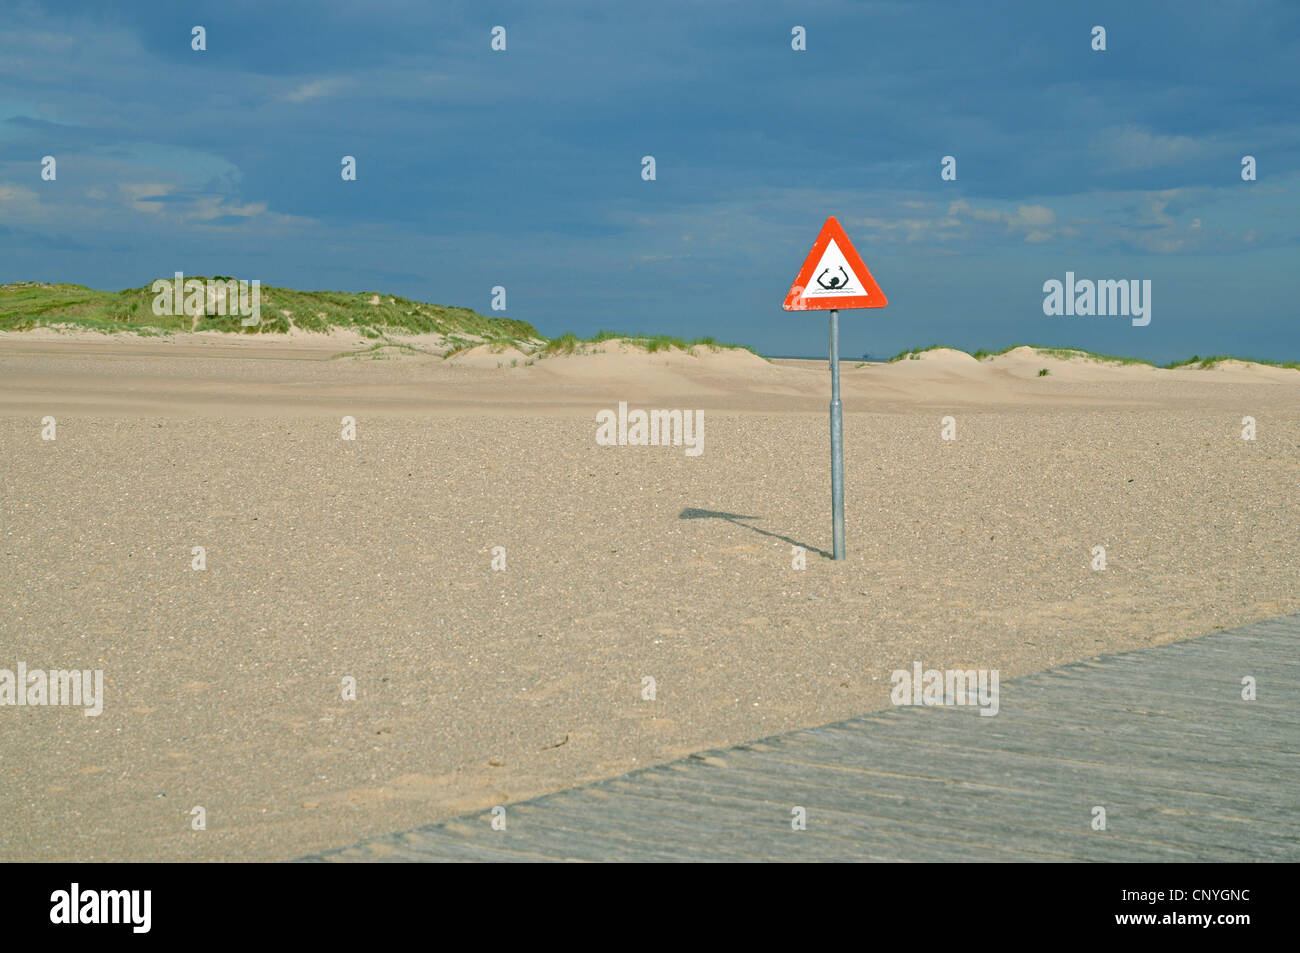 Passeggiata in spiaggia sabbiosa e segno di avvertimento di drawning, Paesi Bassi, Cadzand Foto Stock